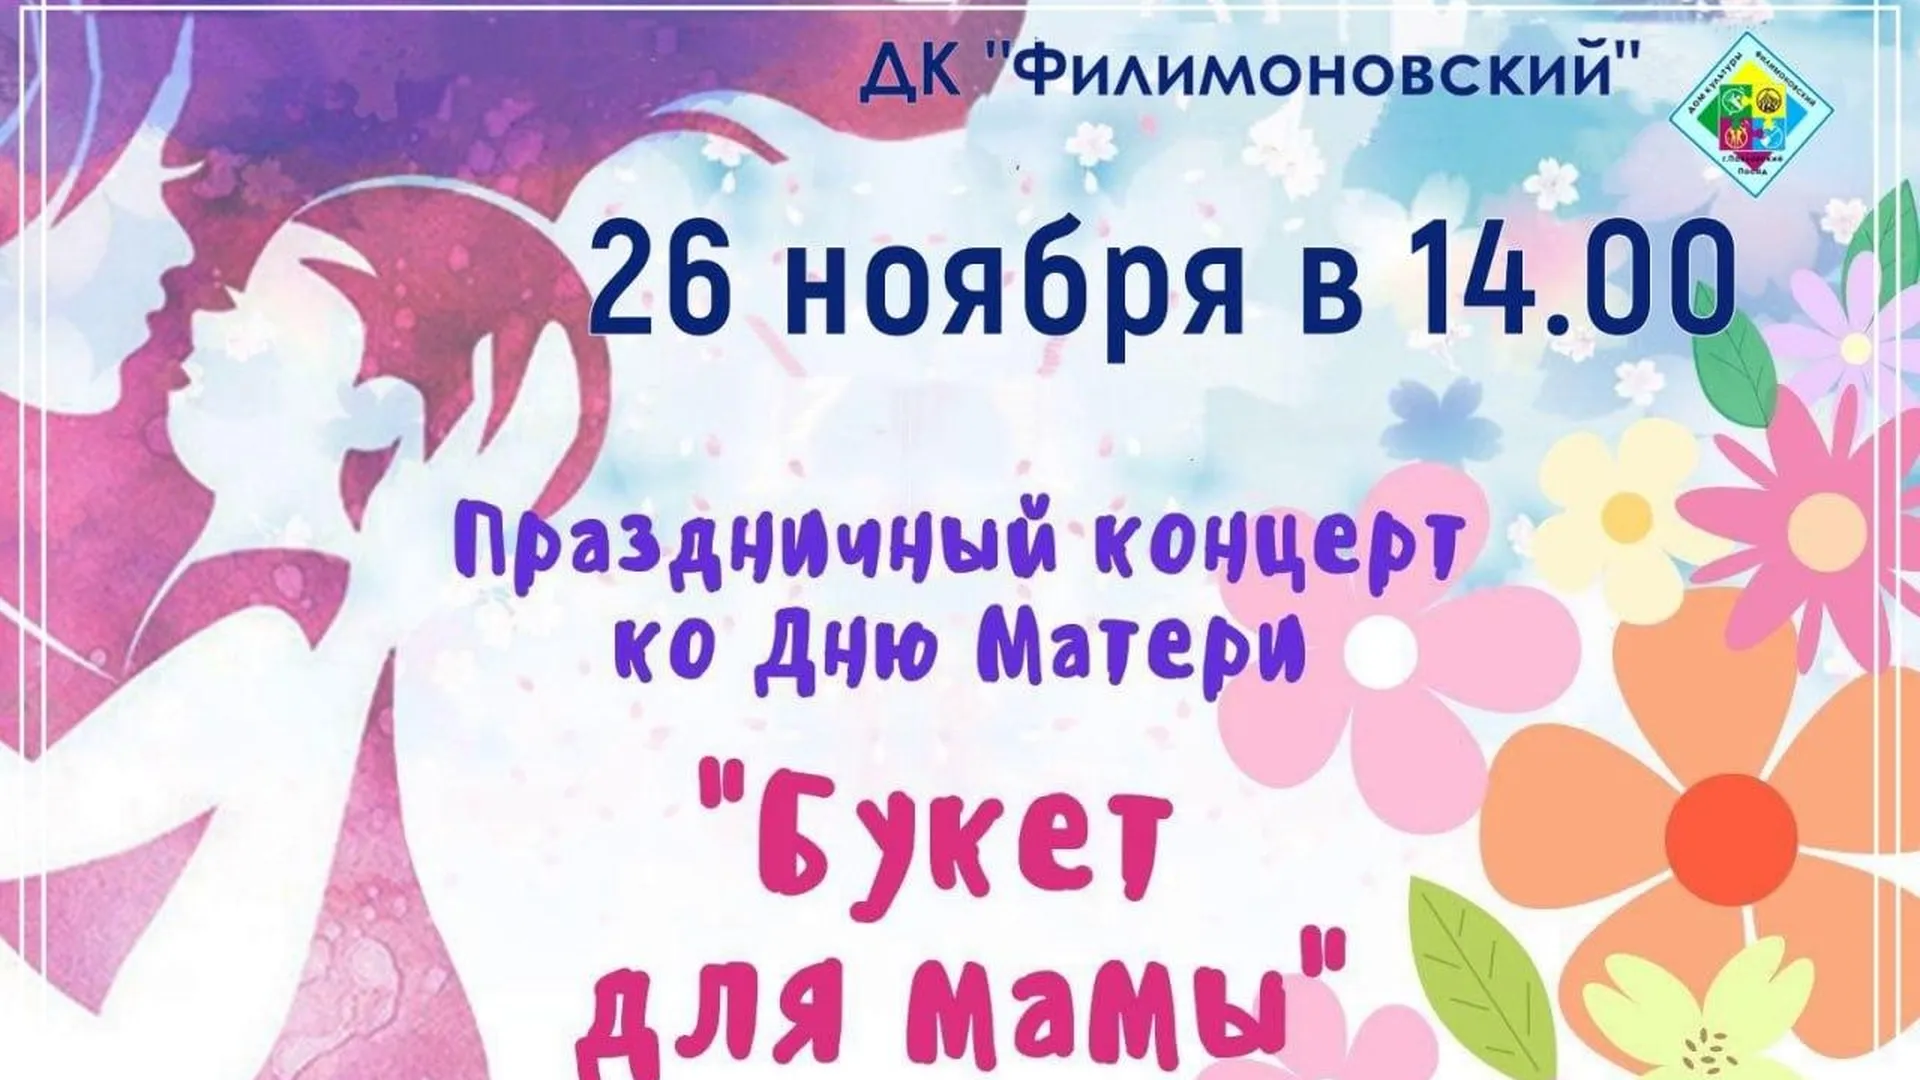 Международный День матери отмечают в Павловском Посаде сразу несколькими концертами